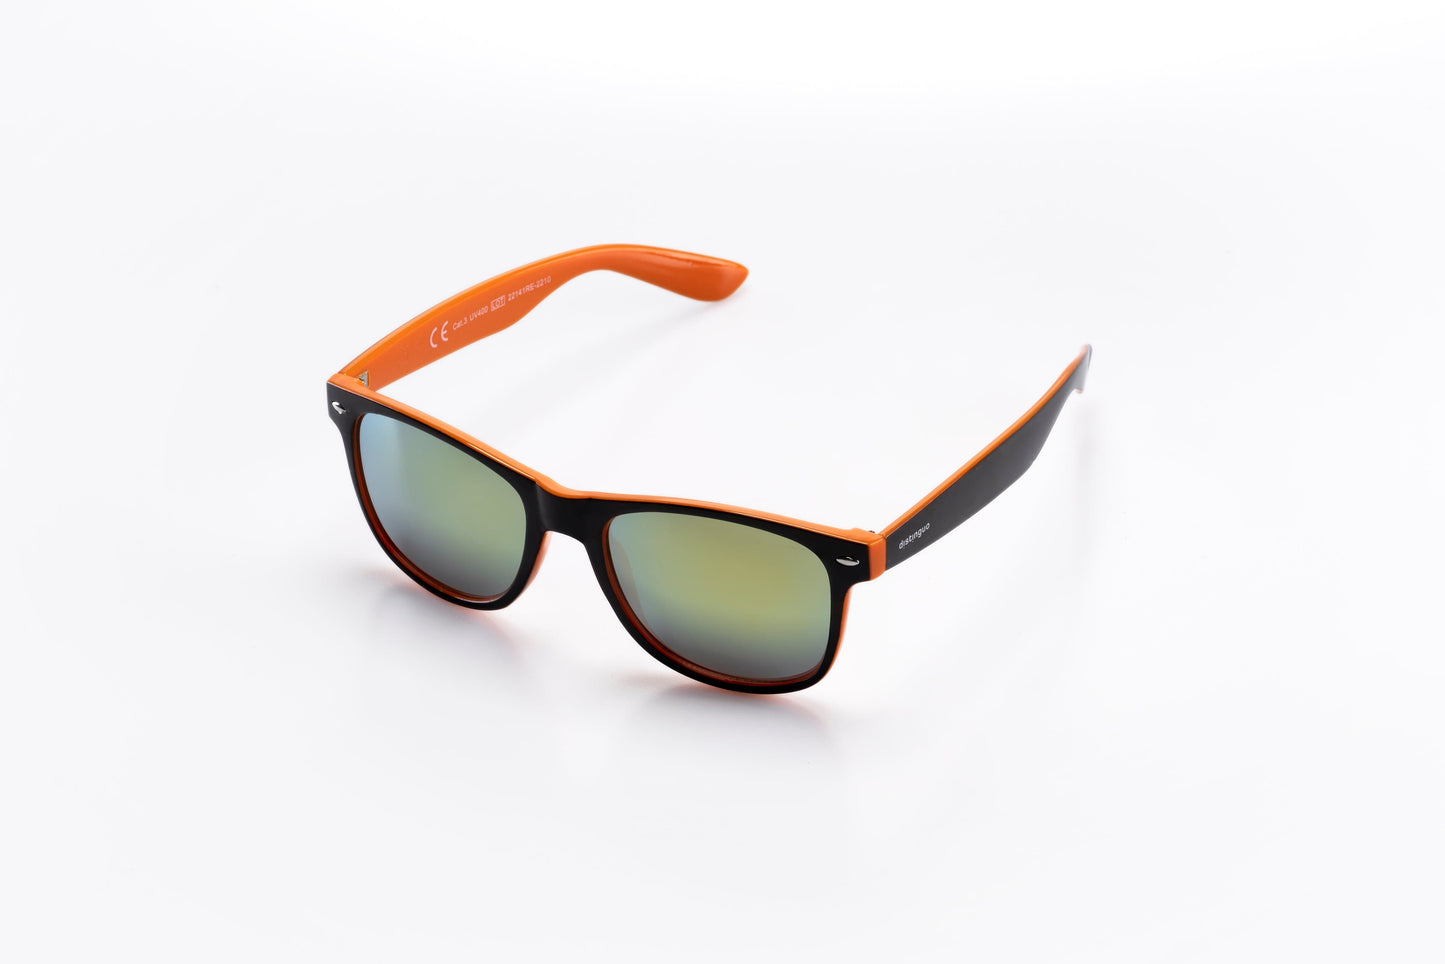 Occhiali da sole Distinguo 502.3 modello Sportivo, montatura in policarbonato nero-arancio con lenti effetto specchio colore arancio.